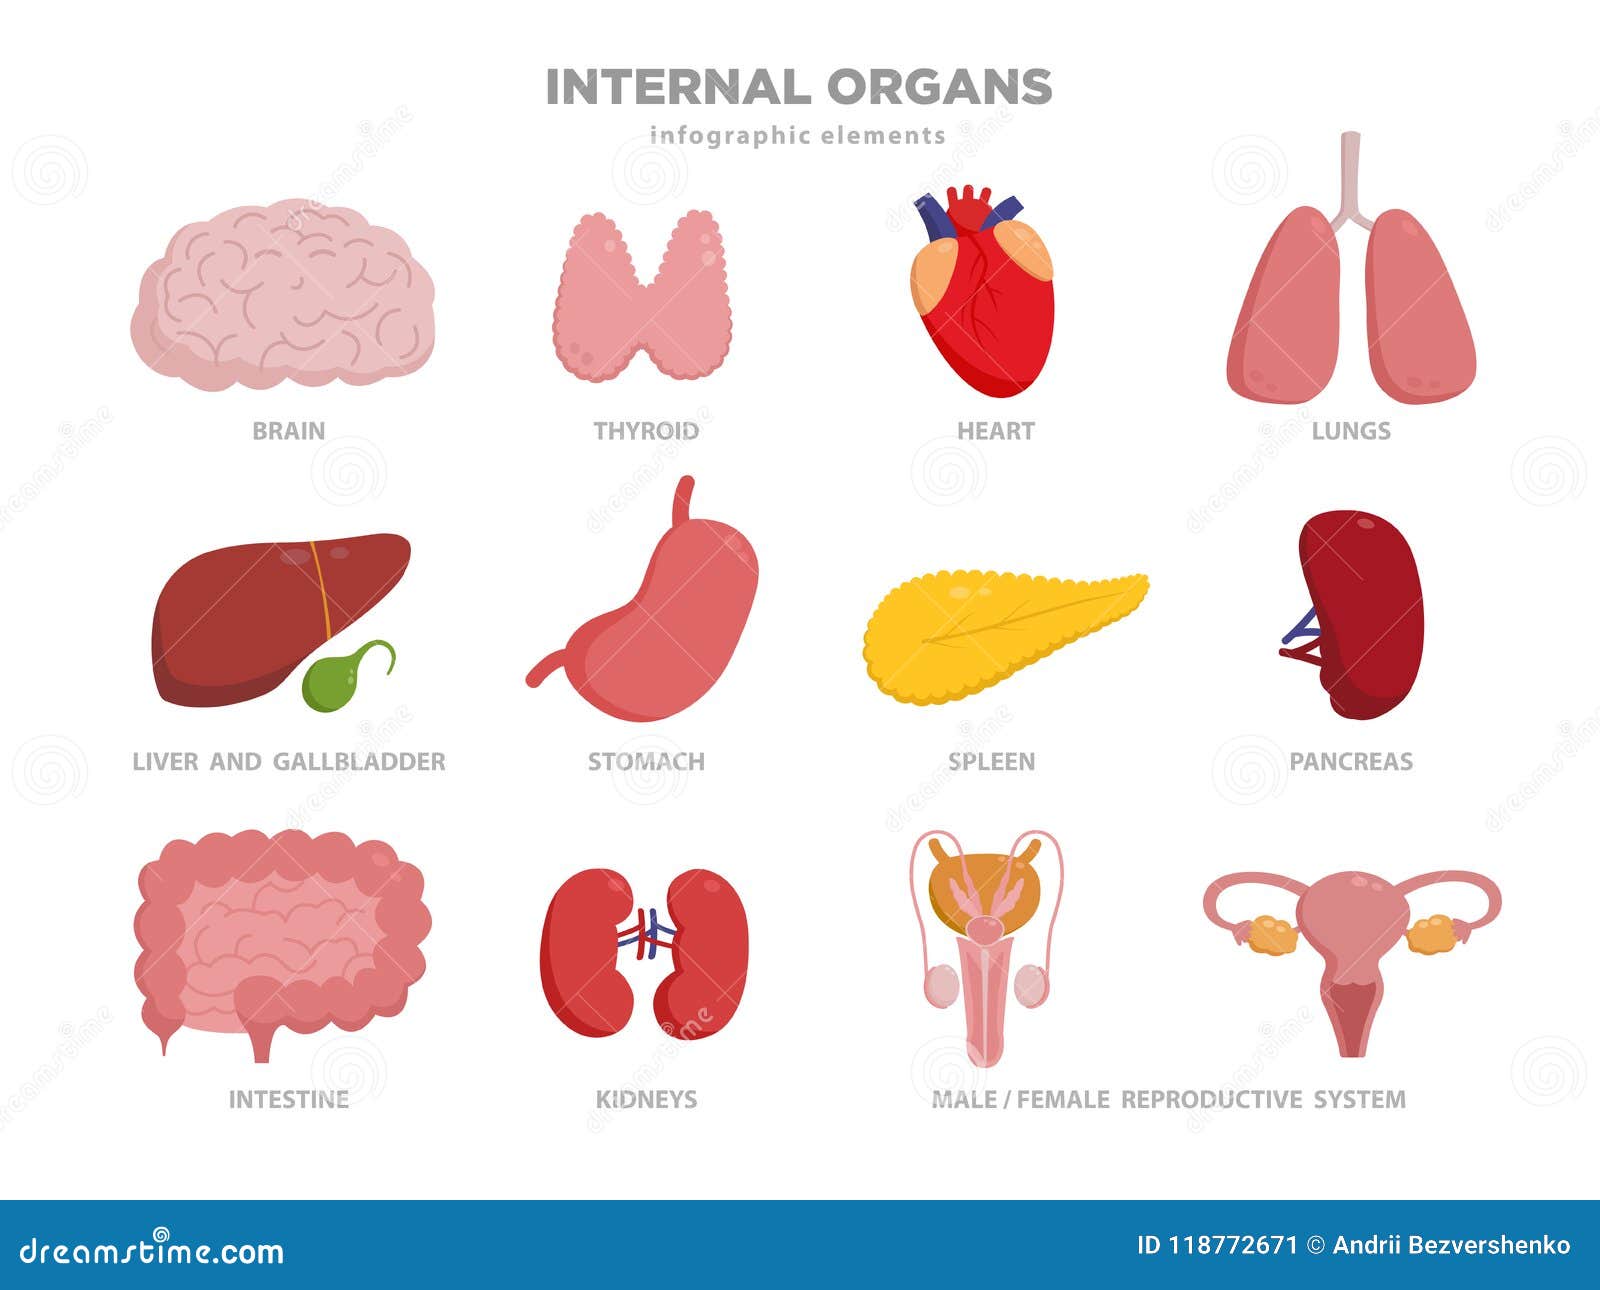 Желудок головной мозг печень. Инфографика органы человека. Печень инфографика. Сердце, легкие, печень, почки, желудок. Легкие сердце печень cartoon.